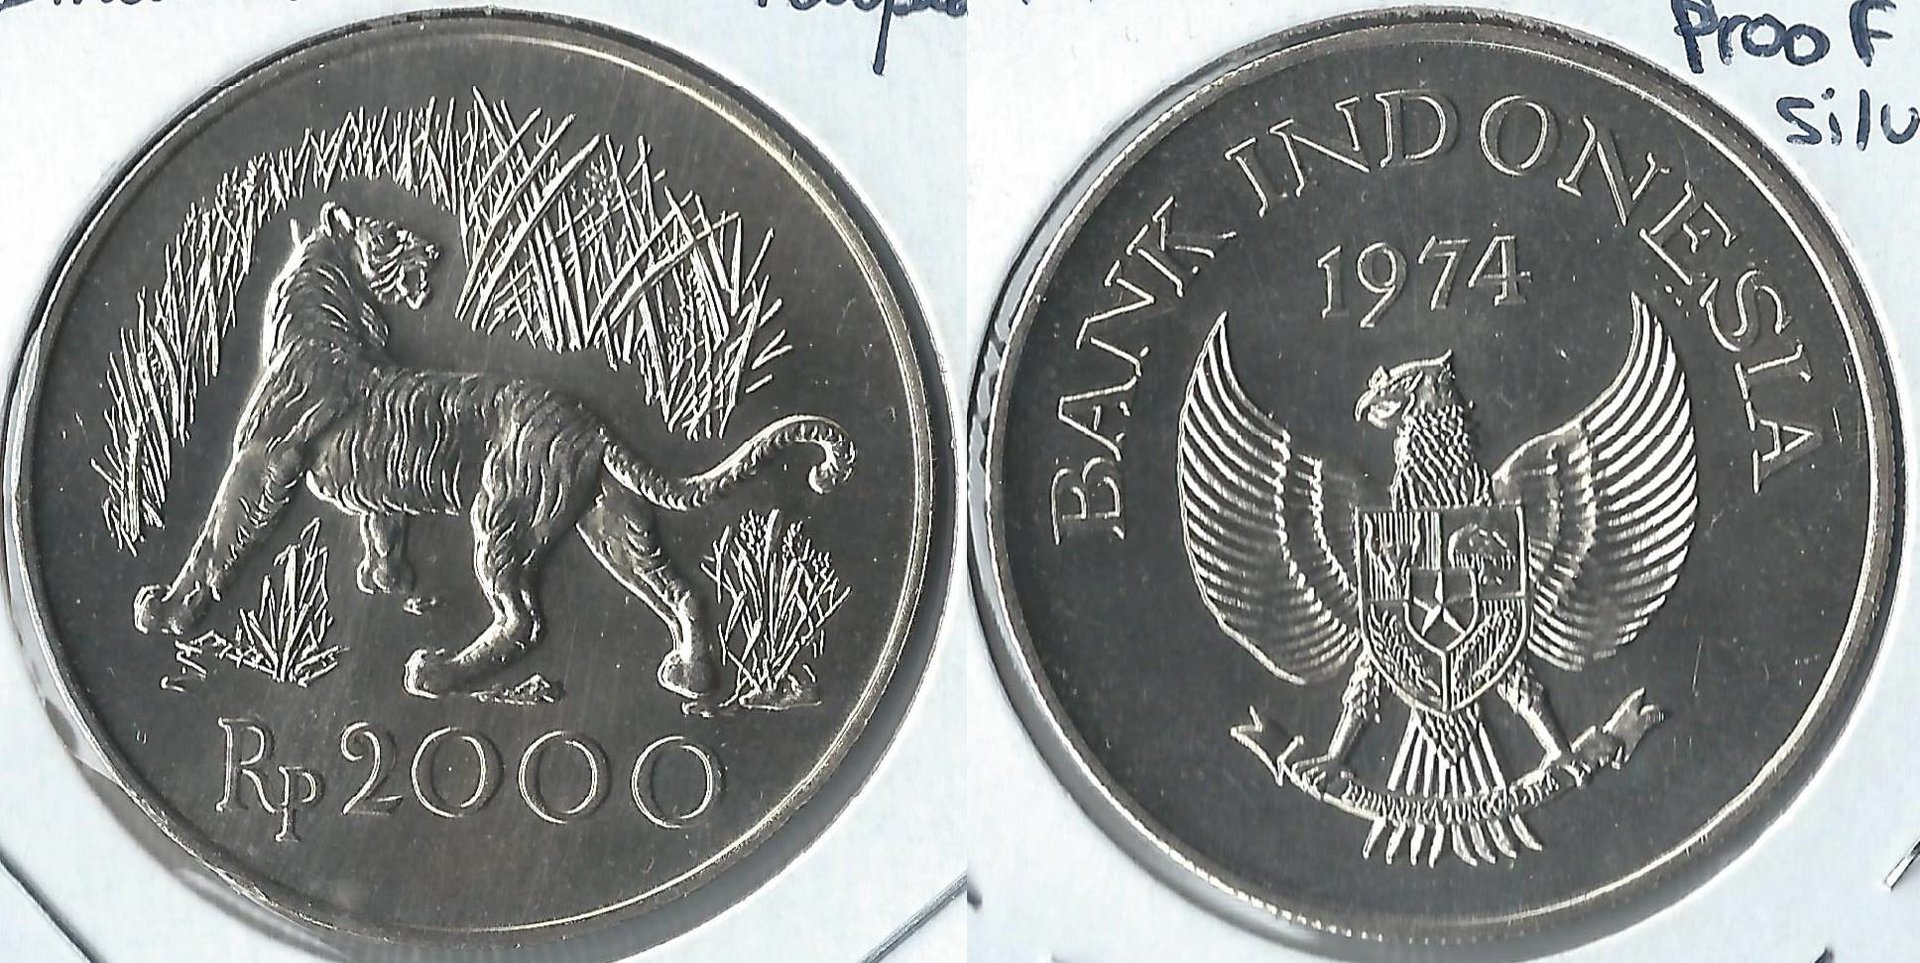 1974 indonesia 2000 rupiah.jpg